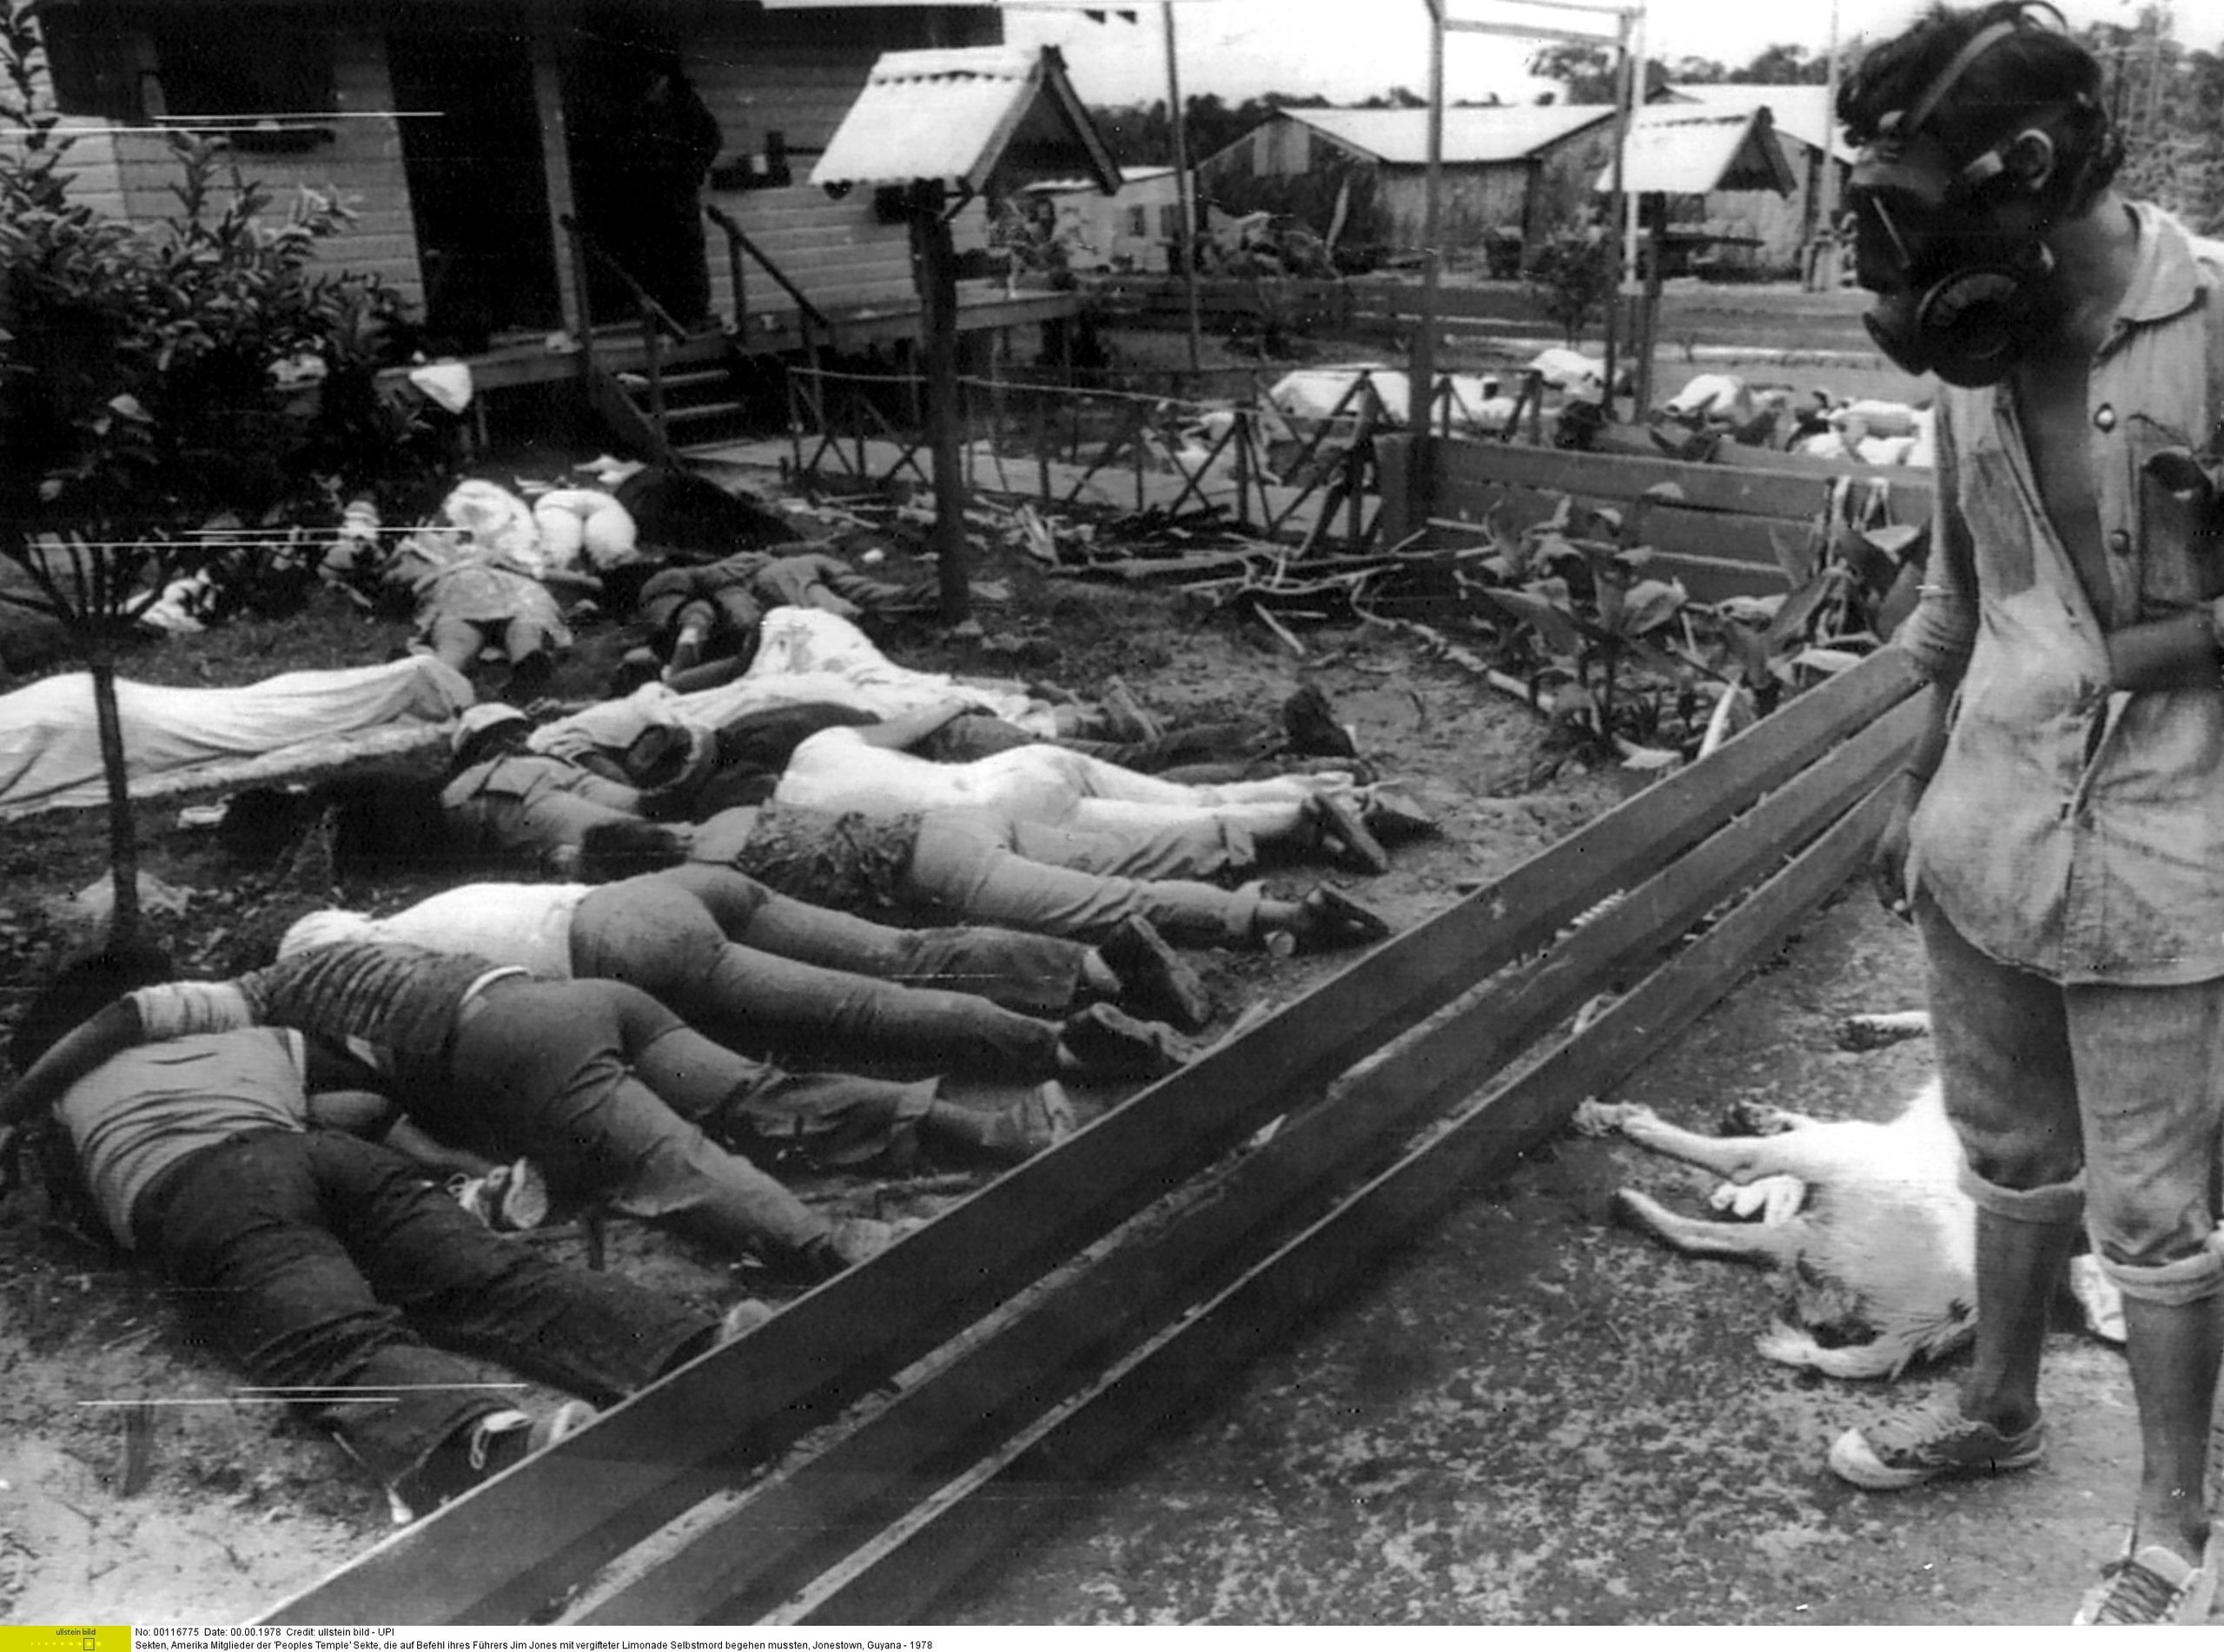 45º aniversario de la masacre de Jonestown: del paraíso socialista al suicidio revolucionario